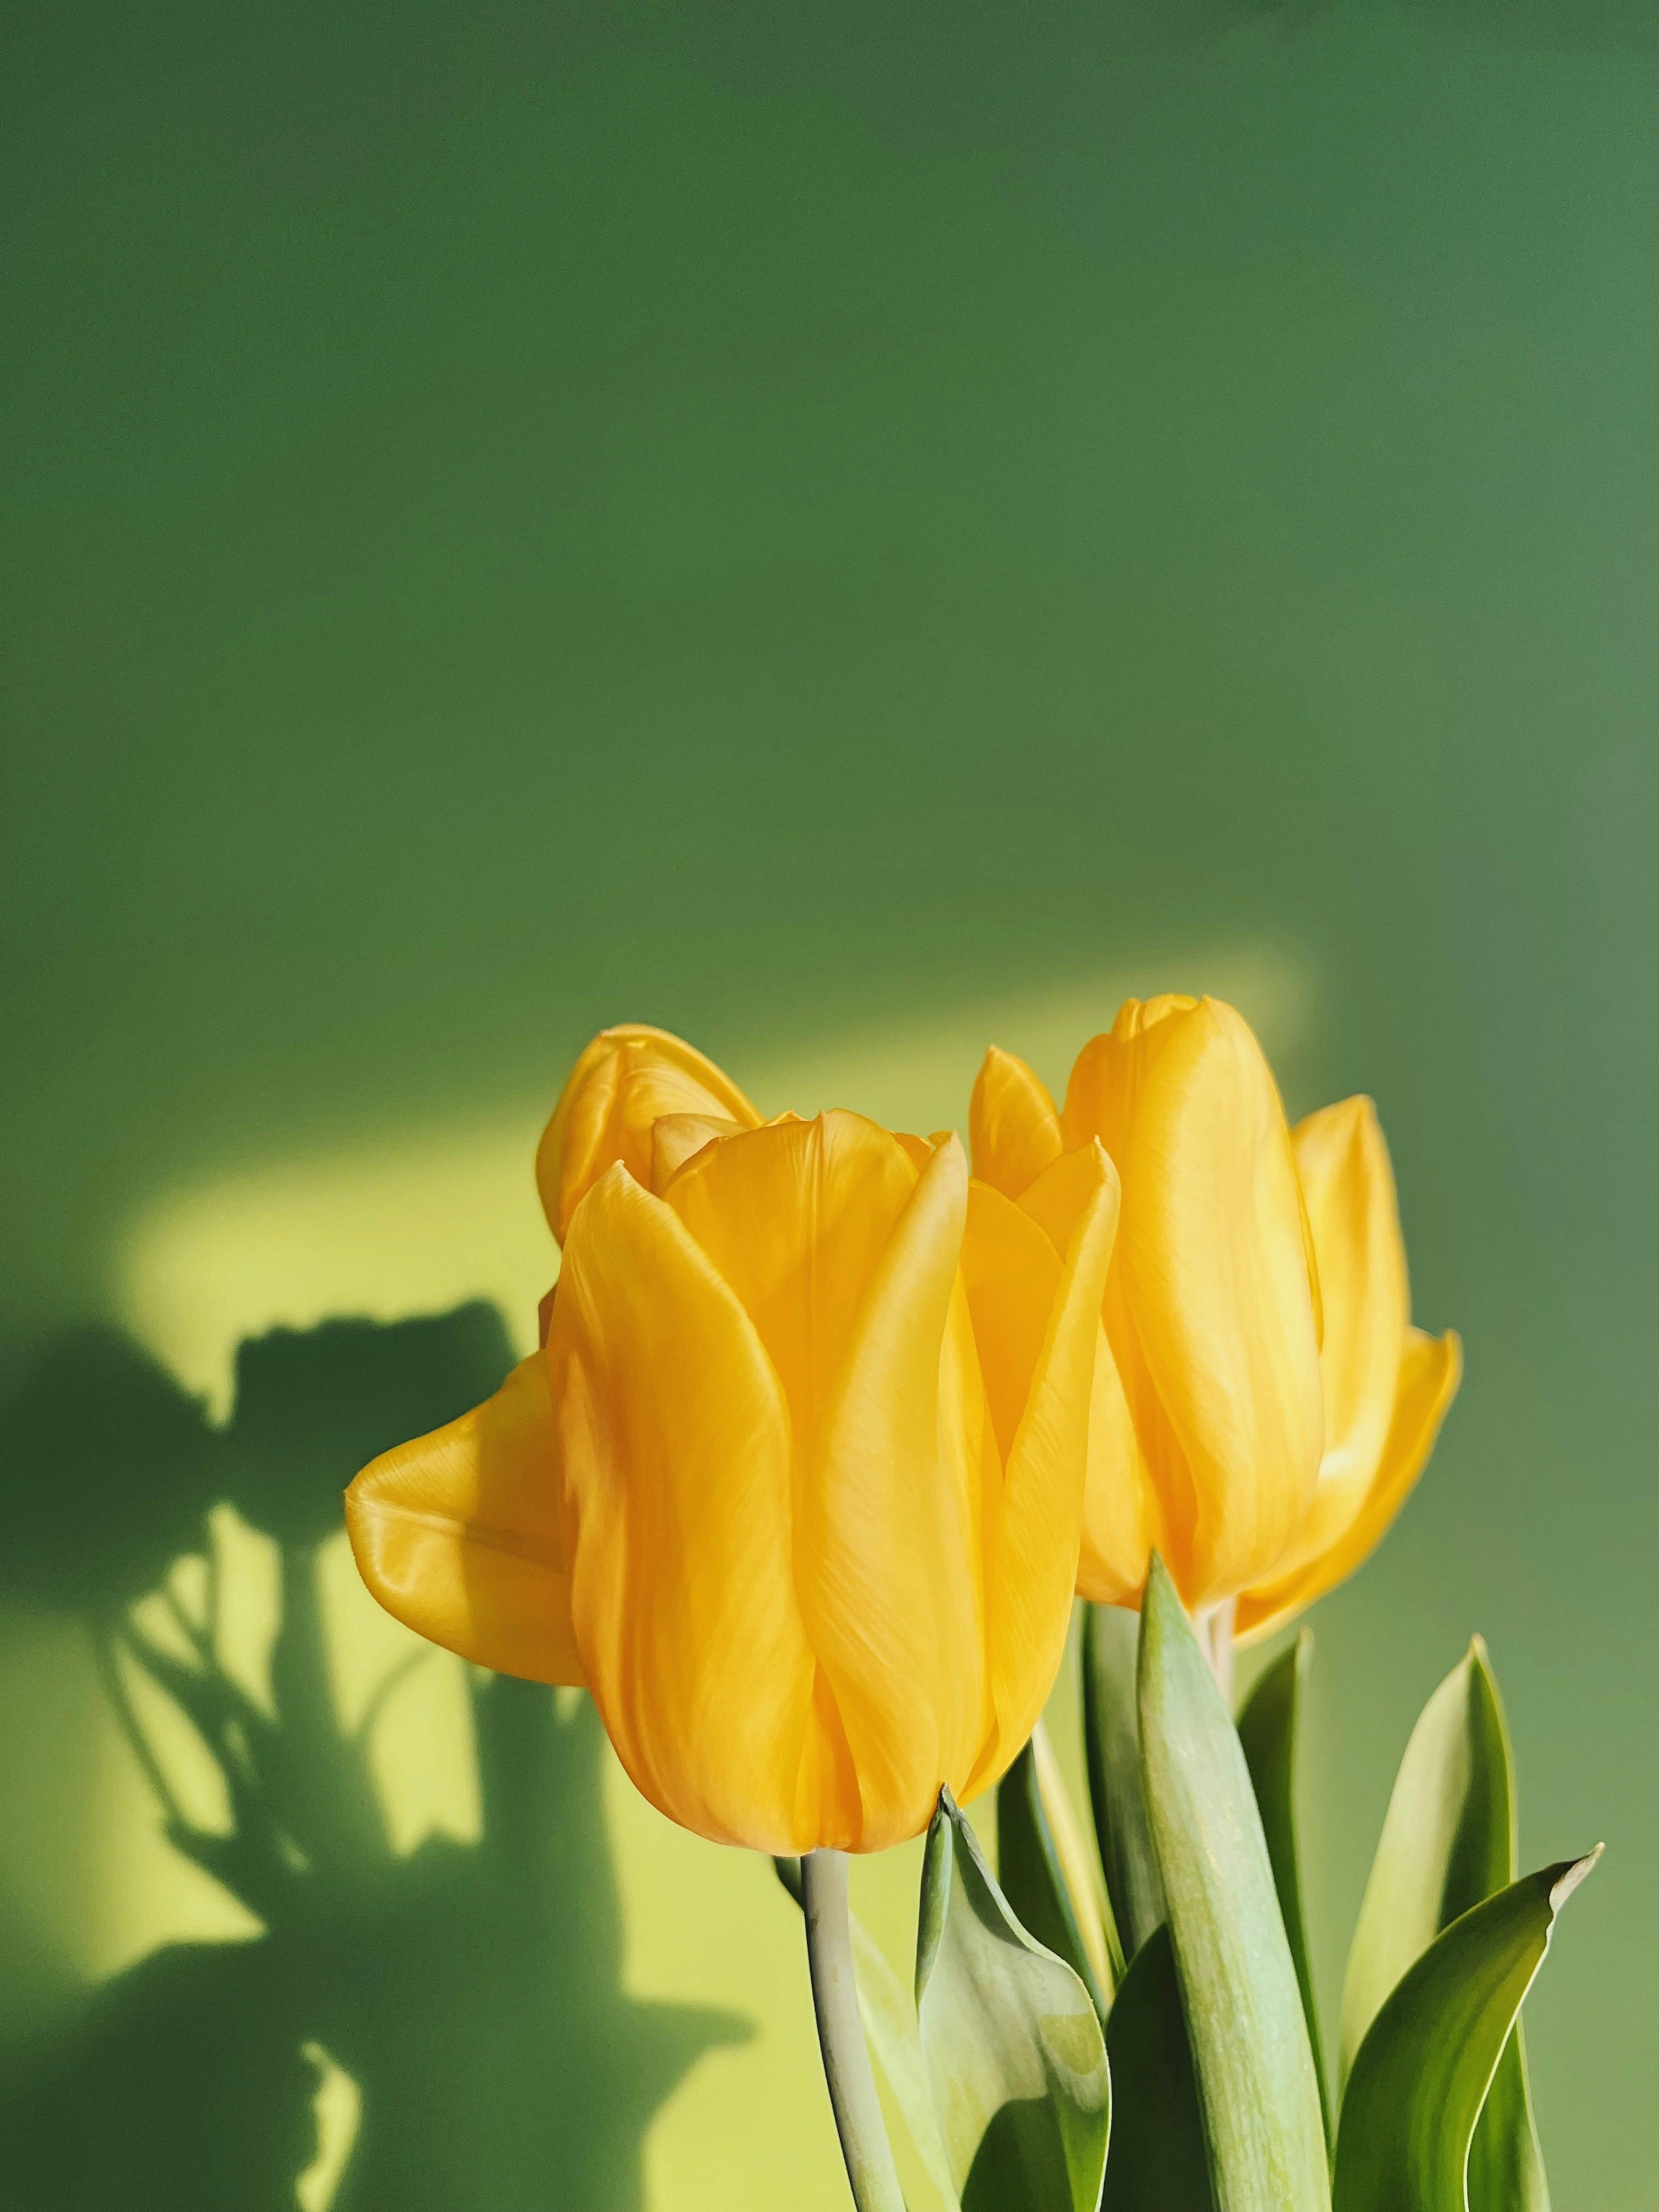 Ảnh hoa Tulip màu vàng miễn phí là món quà tuyệt vời cho tất cả các tín đồ yêu hoa. Với các hình ảnh hoa Tulip màu vàng đầy sắc màu và độc đáo, bạn sẽ tìm thấy bức tranh hoàn hảo cho màn hình của mình. Tận hưởng mùa xuân với những bông hoa xinh đẹp nhất thế giới và tưởng tượng về một thế giới đầy màu sắc và vẻ đẹp.